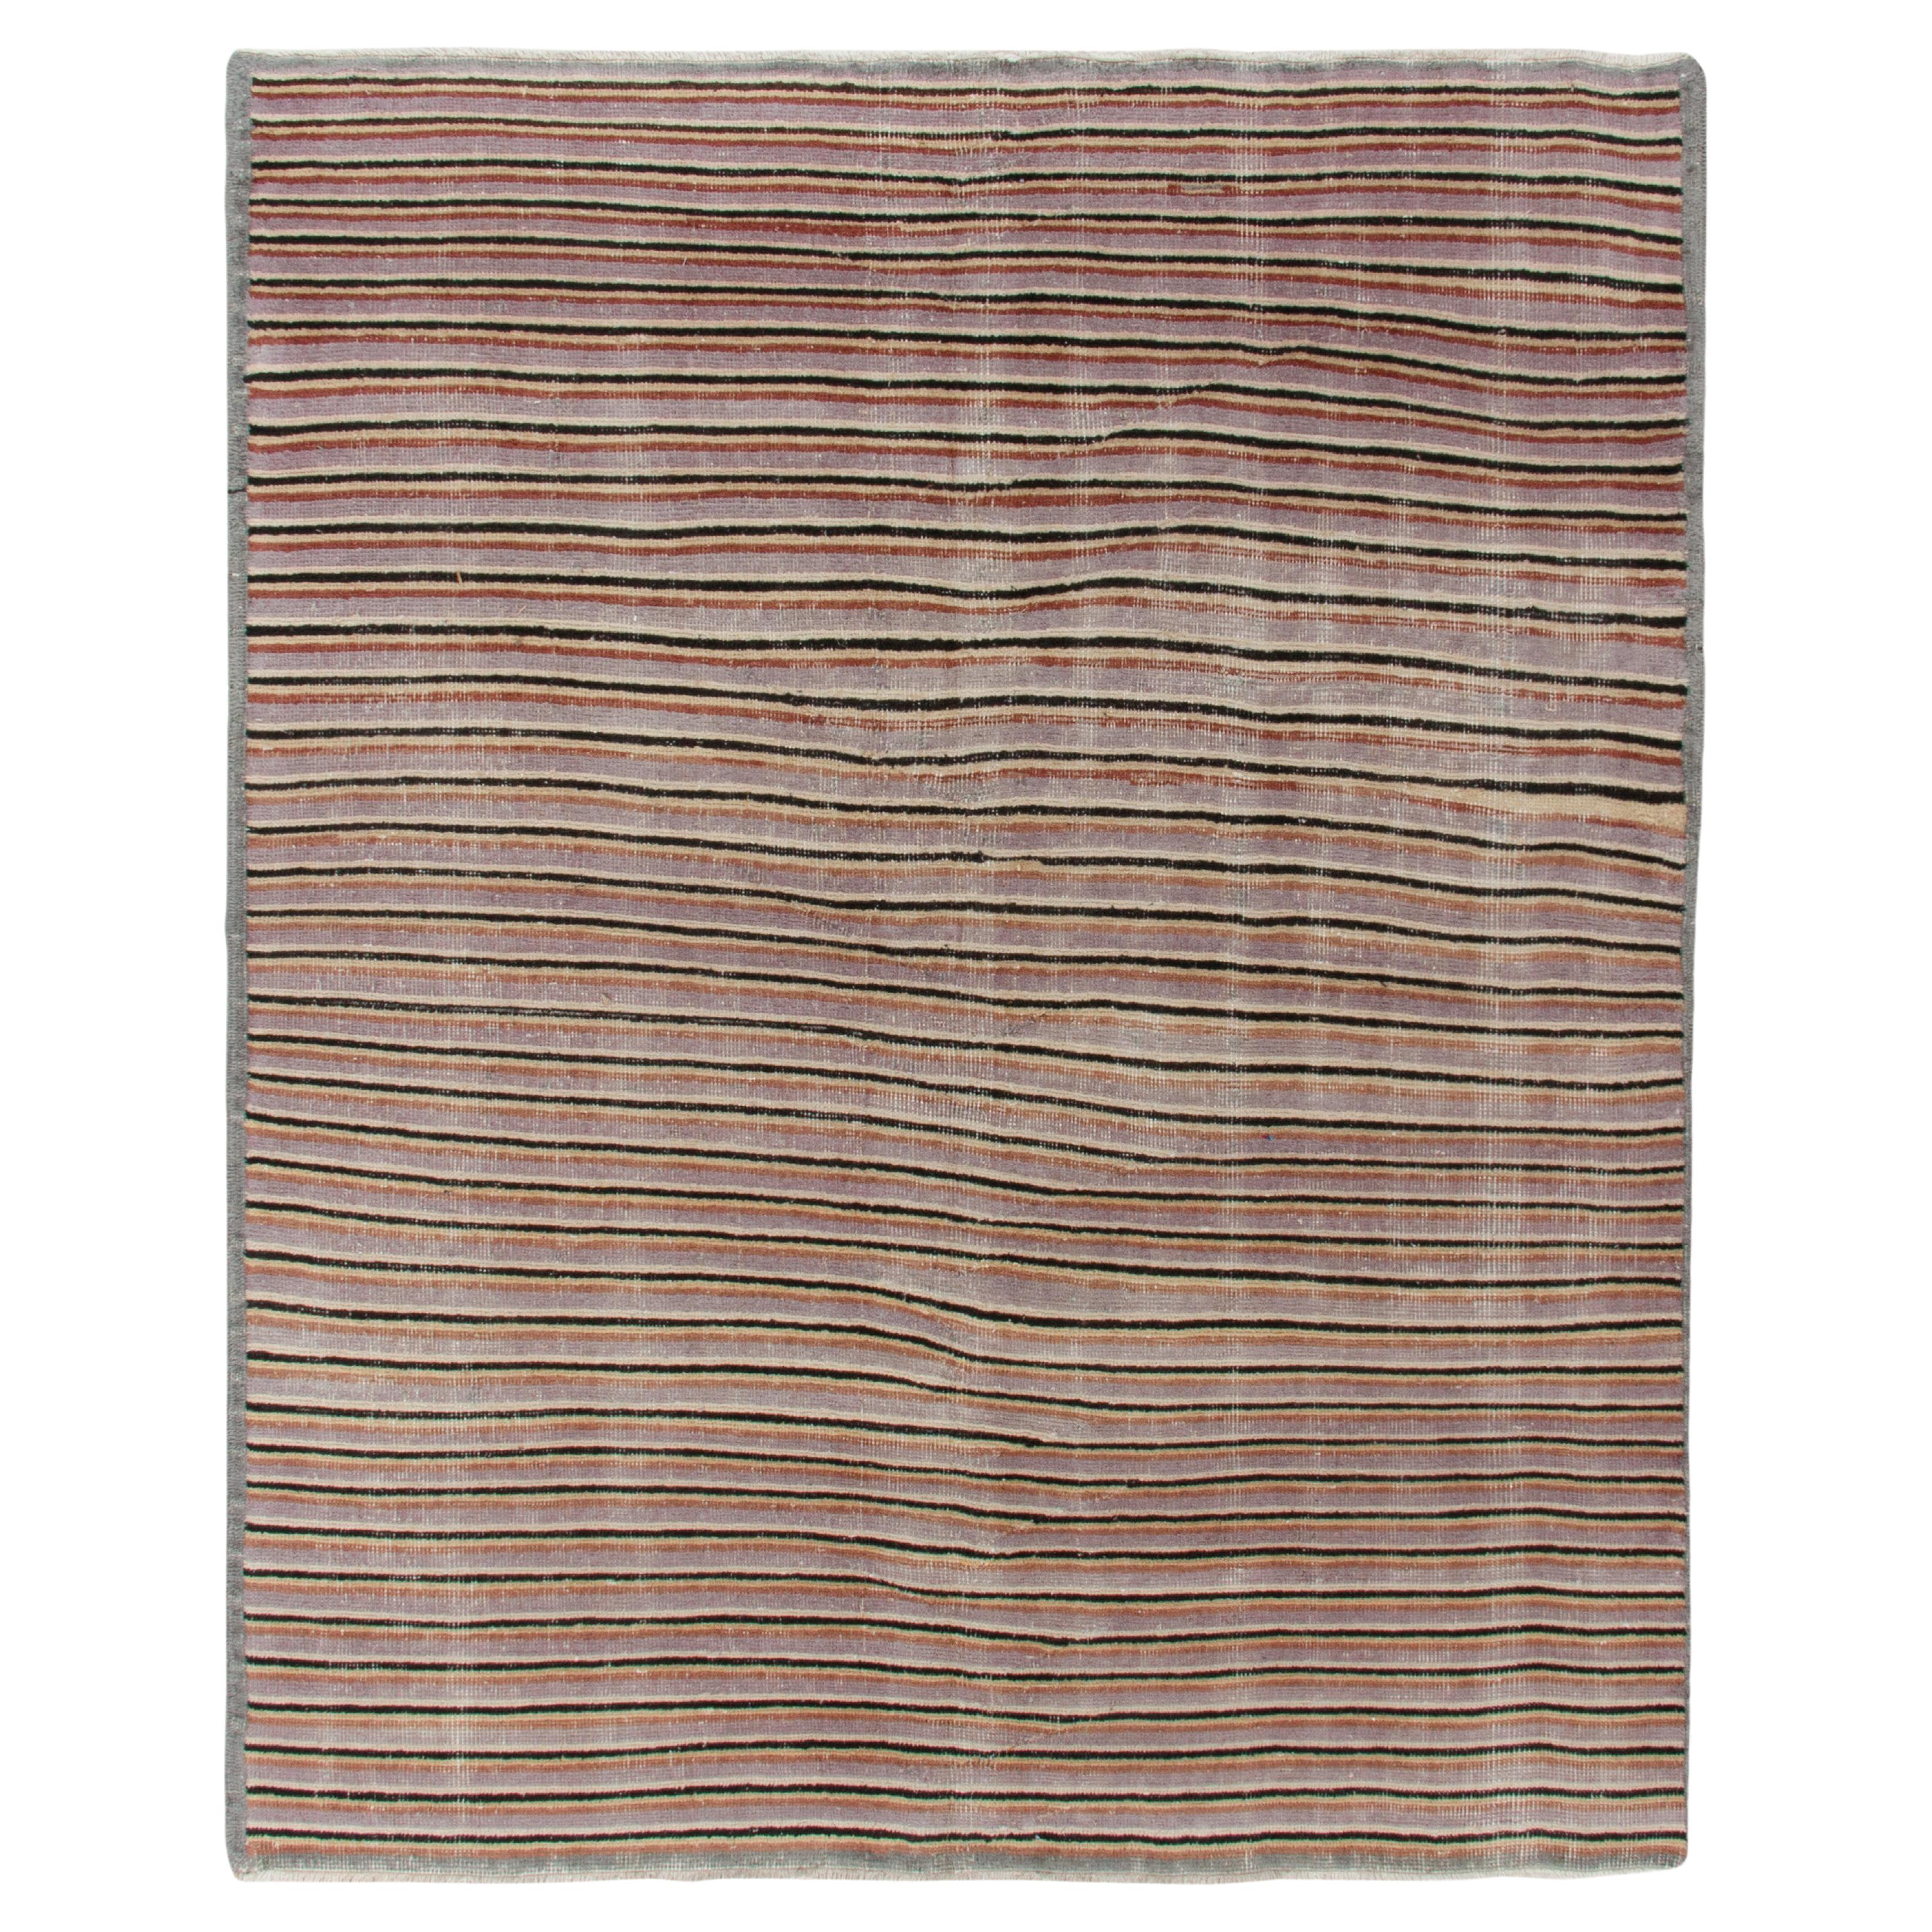 1960er Jahre Vintage Distressed Teppich in Grau, Braun gestreiftes Muster von Teppich & Kelim